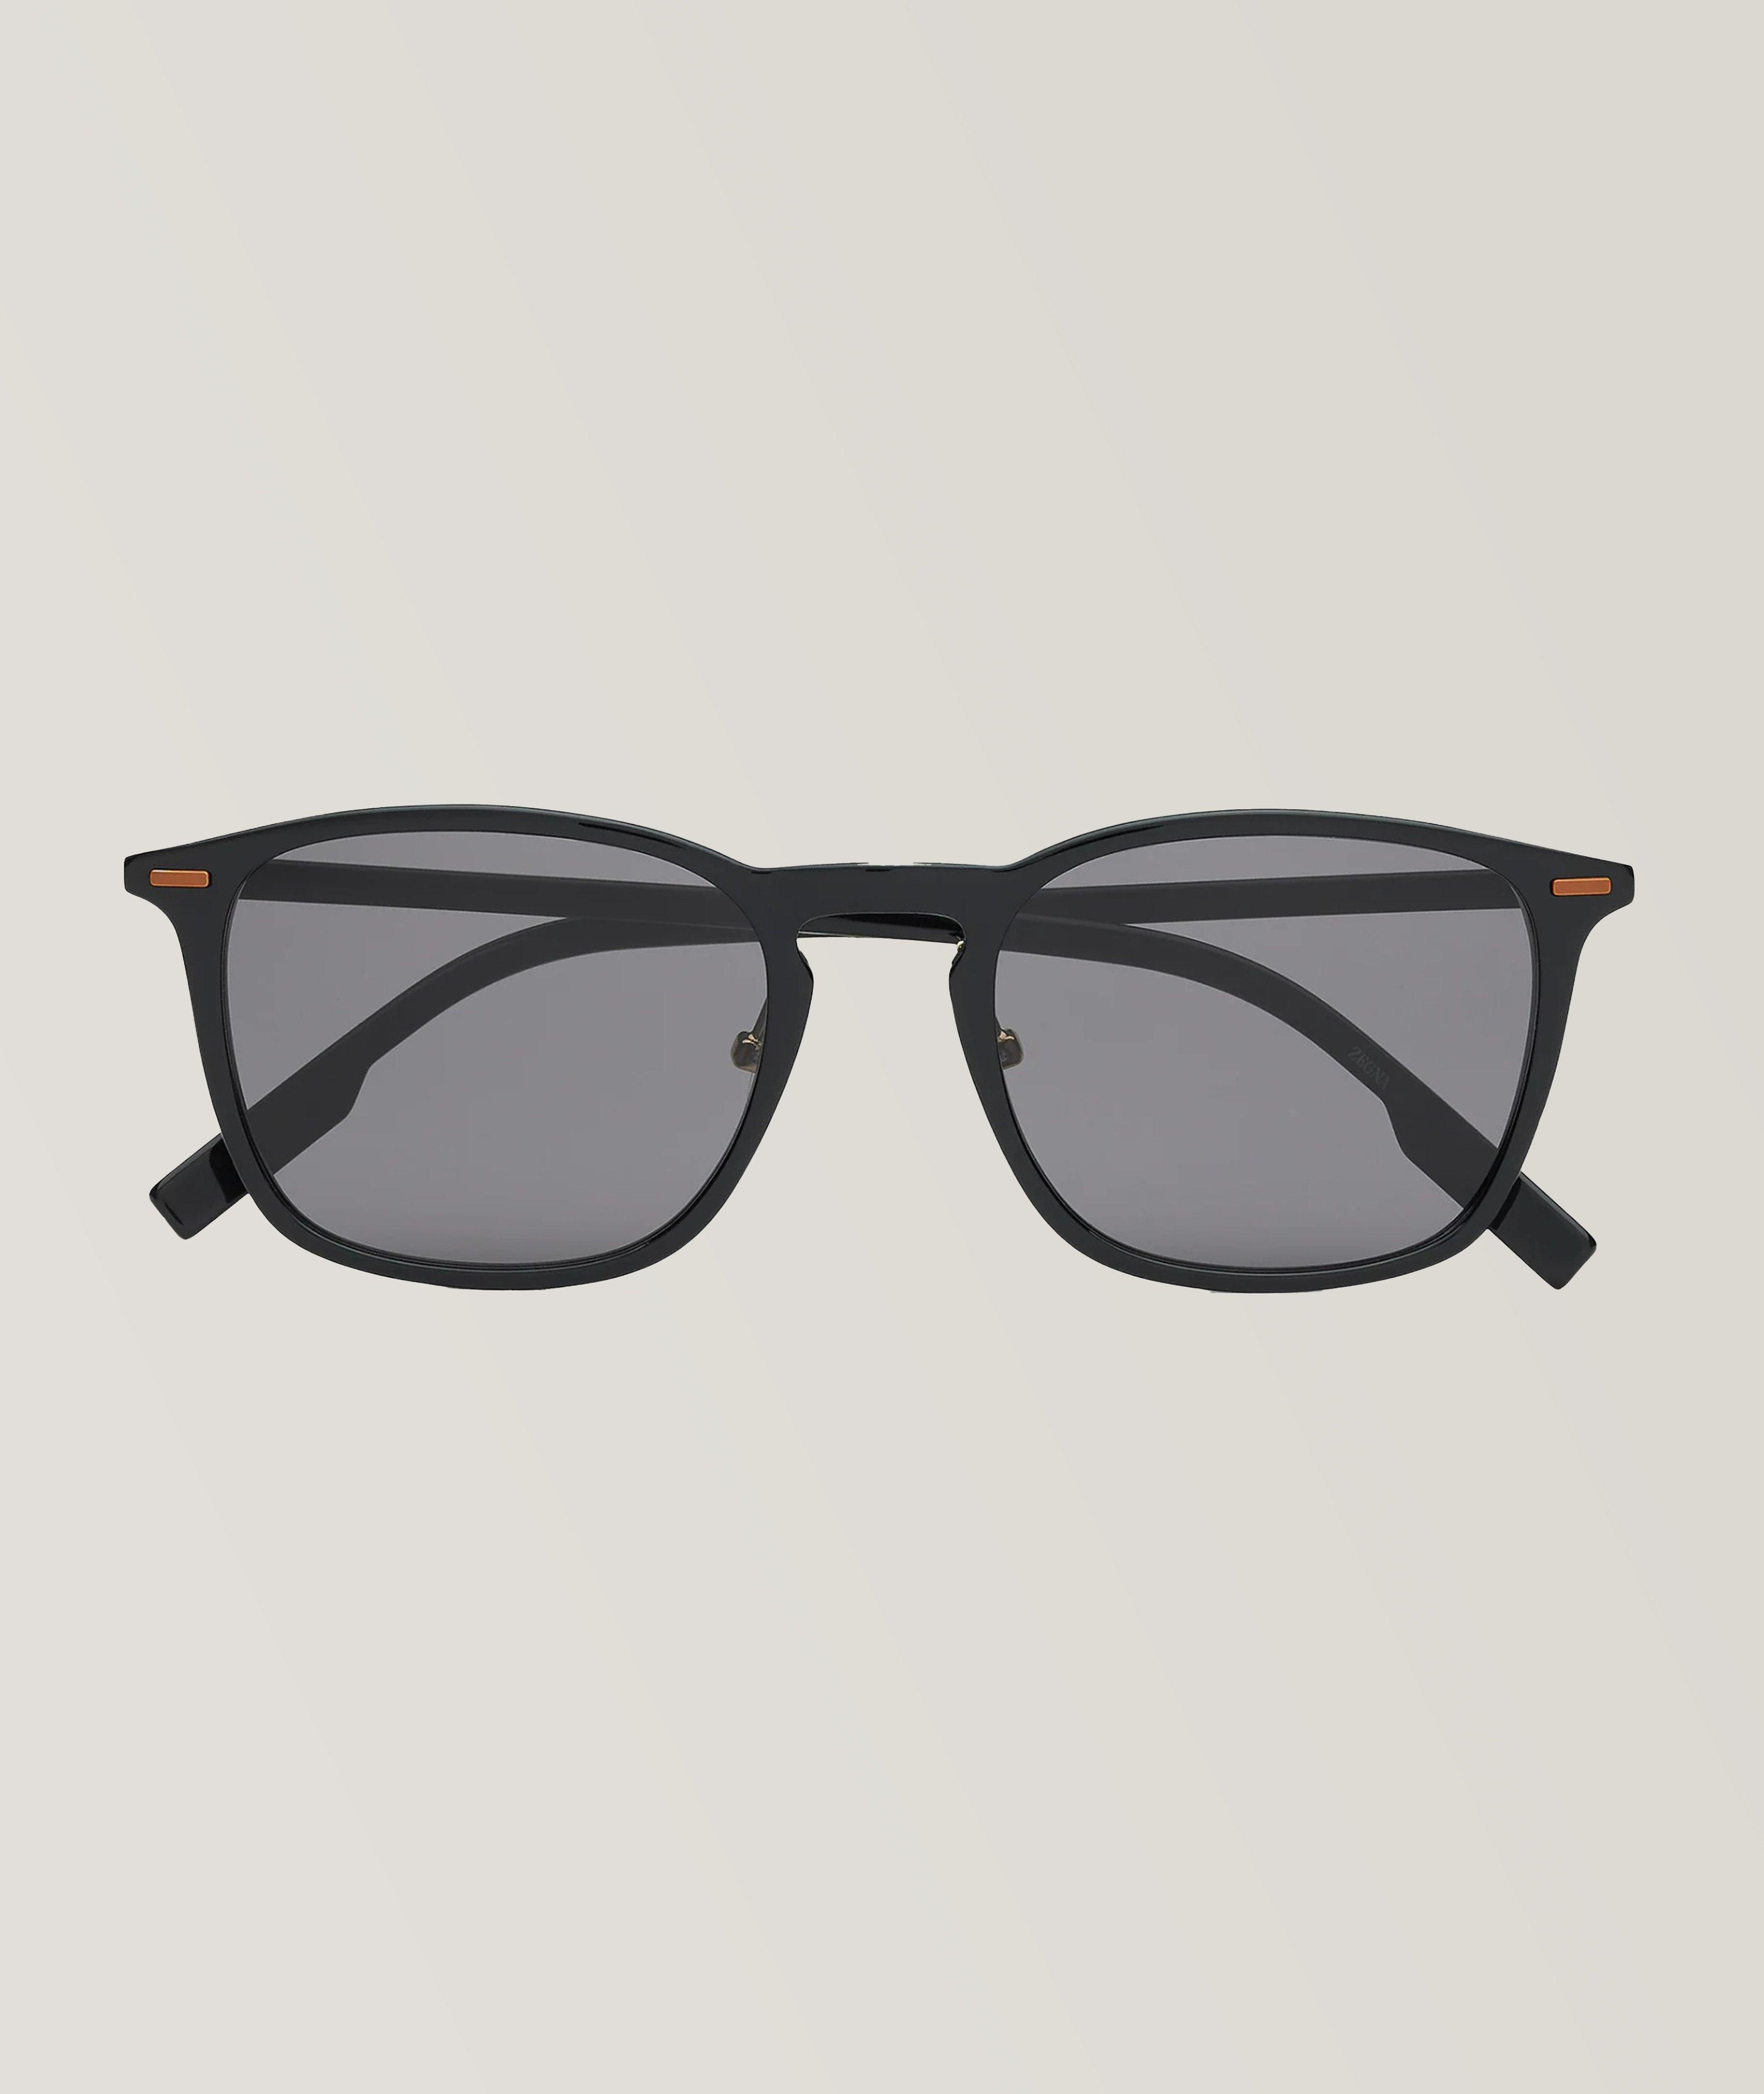 Leggerissimo Panthos Frame Sunglasses image 0